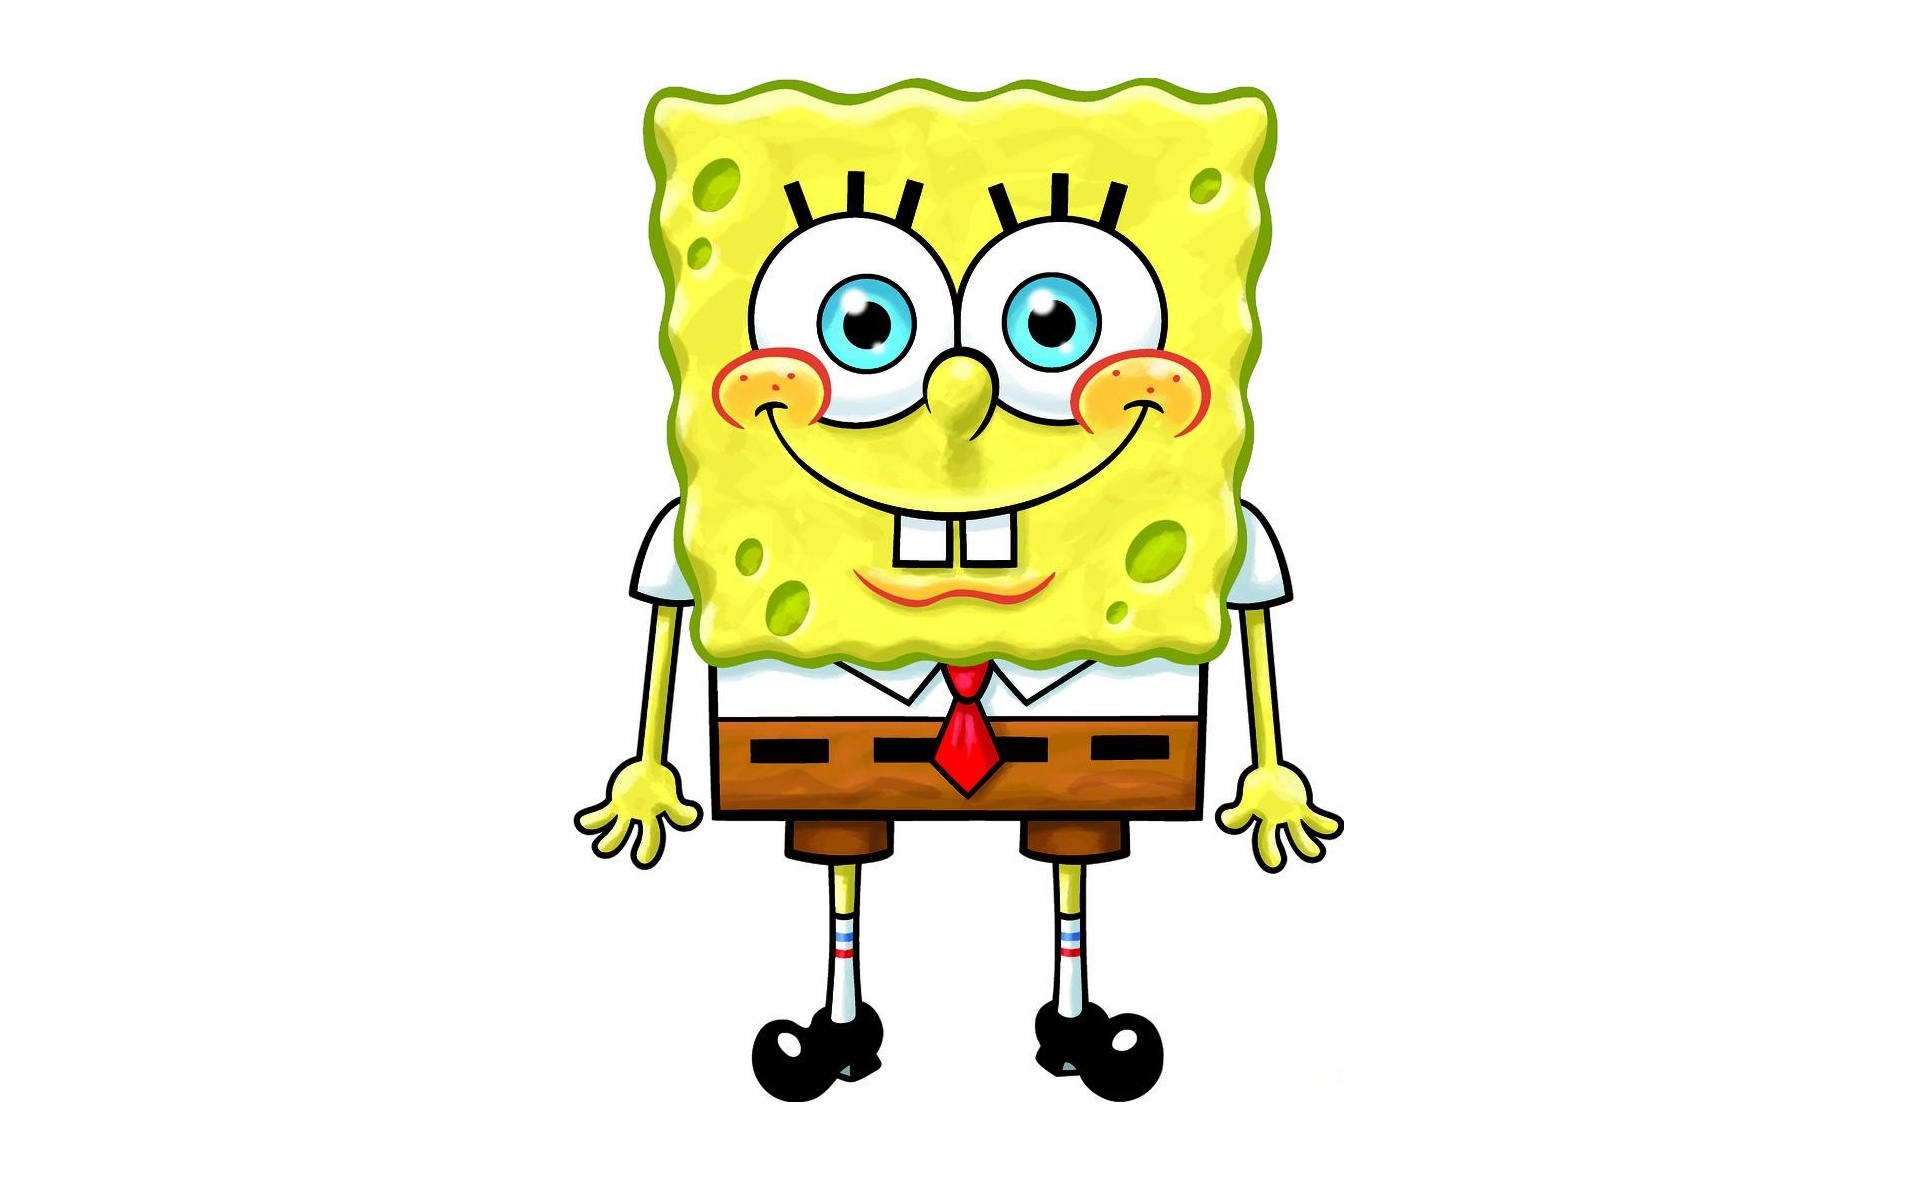 Губка боб картинки для срисовки. Губка Боб квадратные штаны для срисовки. Как нарисовать губку Боба. Как нарисовать Спанч Боба. Spongebob Squarepants 3 мультфильм 2019.